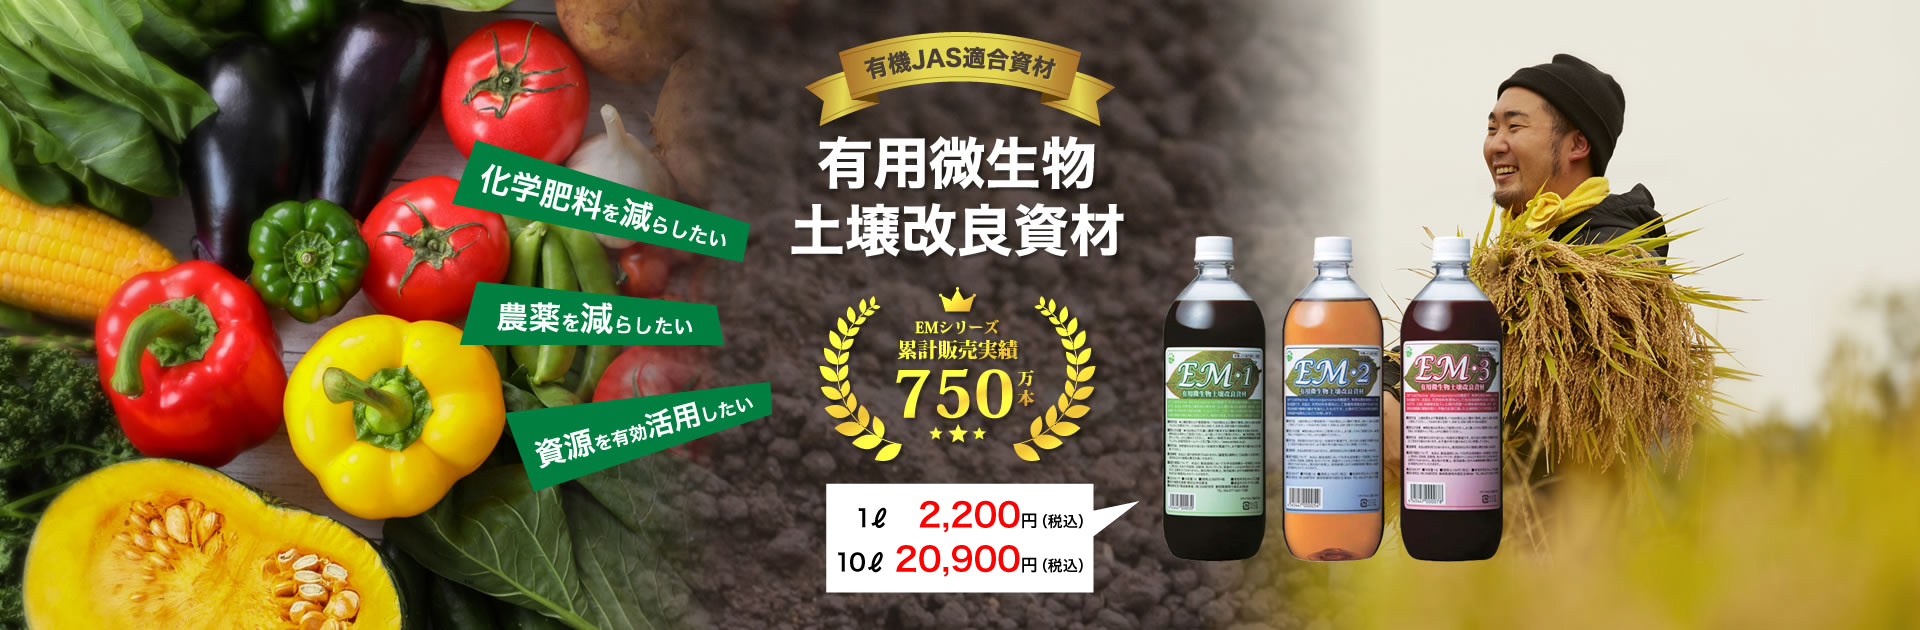 有機JAS適合【有用微生物土壌改良資材】化学肥料を減らしたい、資源を有効活用したい。